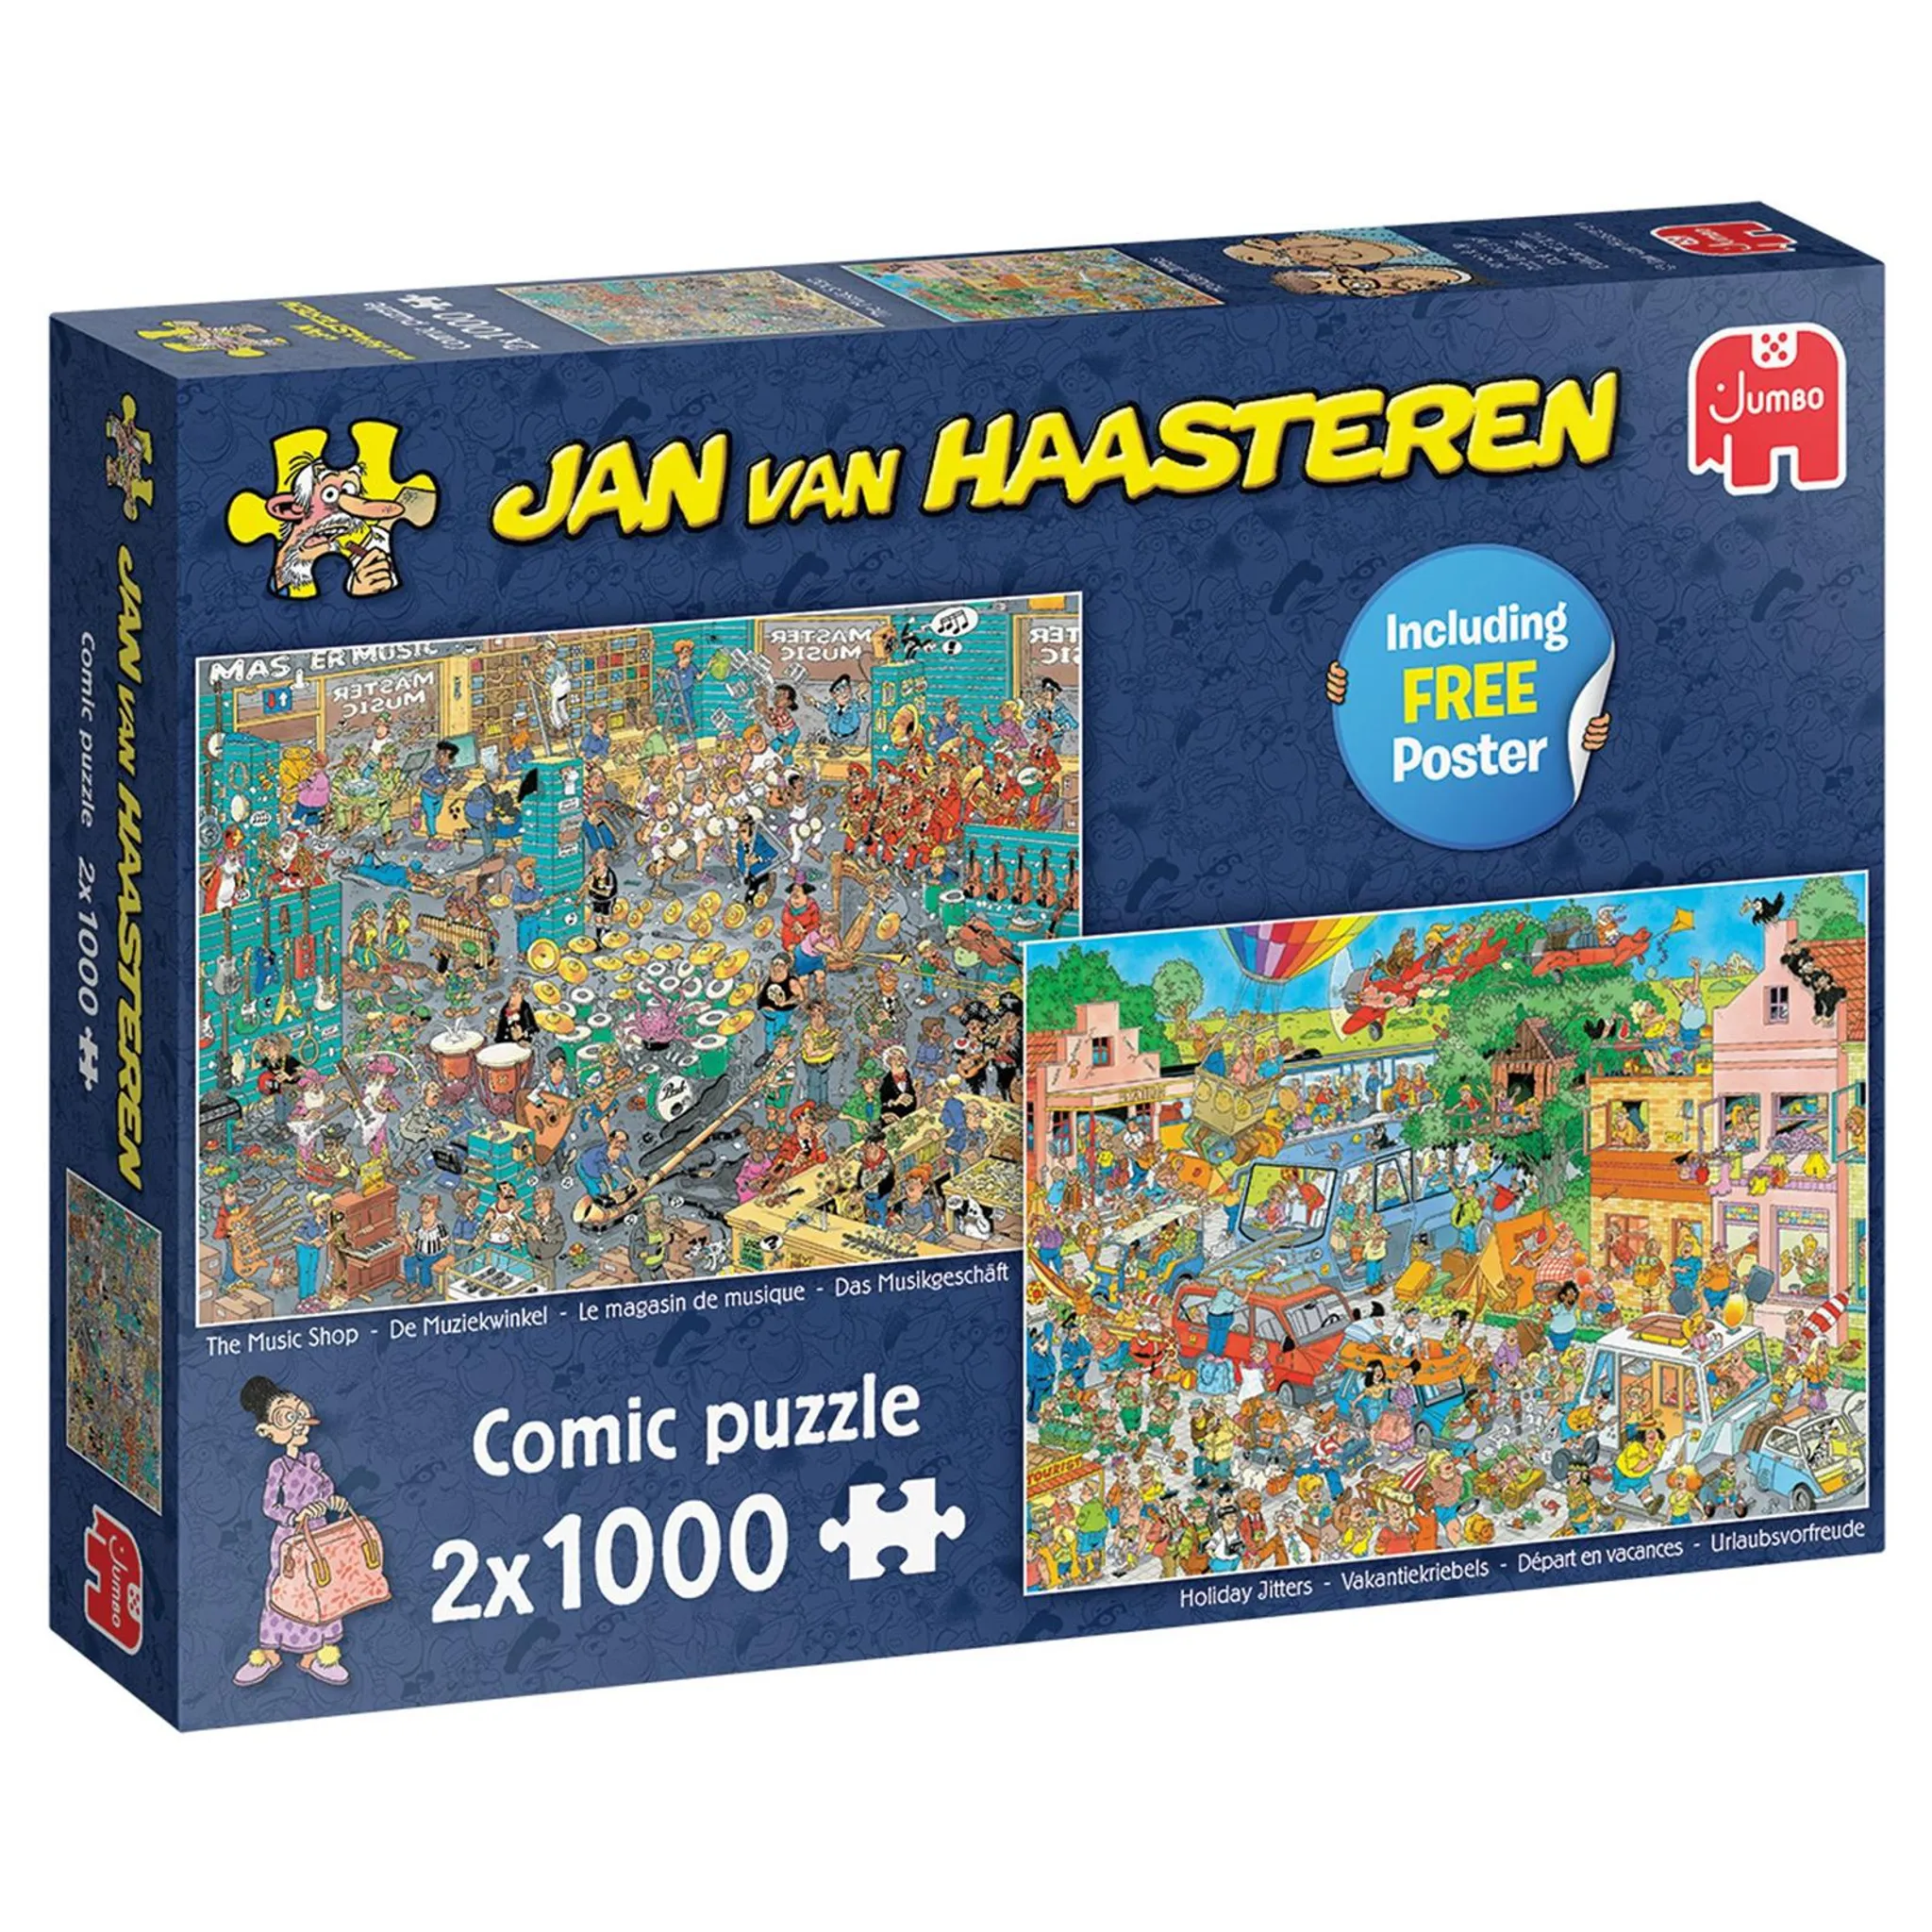 JUMBO comic puzzle 1000ピースジグソーパズル2点セット 新しい